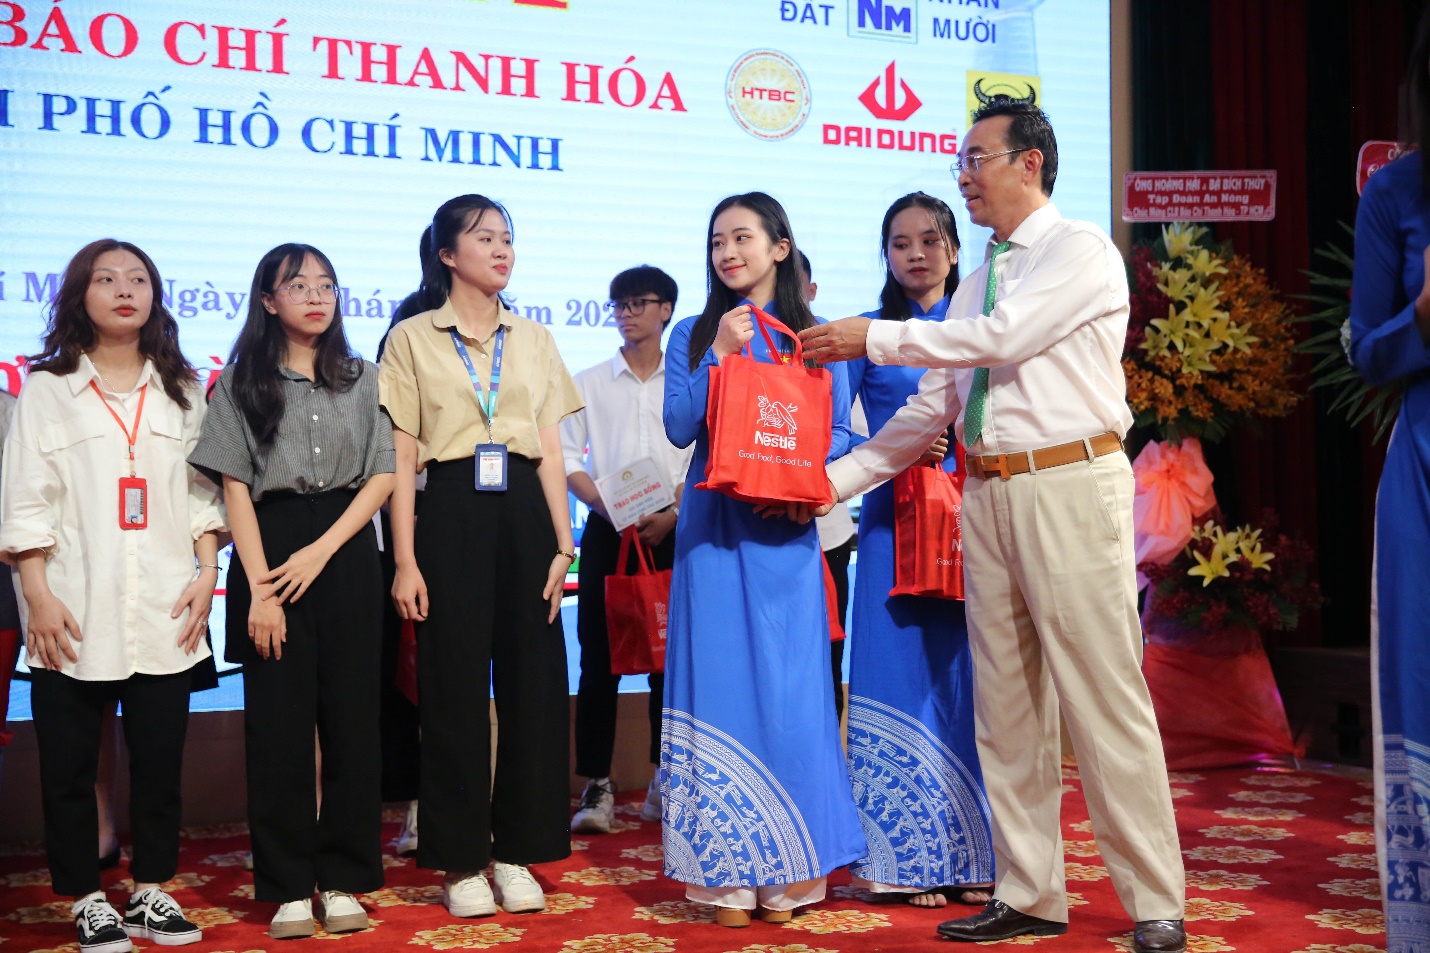 Ông Trần Văn Mười – Phó Chủ tịch Thường trực Hội đồng hương Thanh Hóa tại TP Hồ Chí Minh trao quà và học bổng cho các em sinh viên